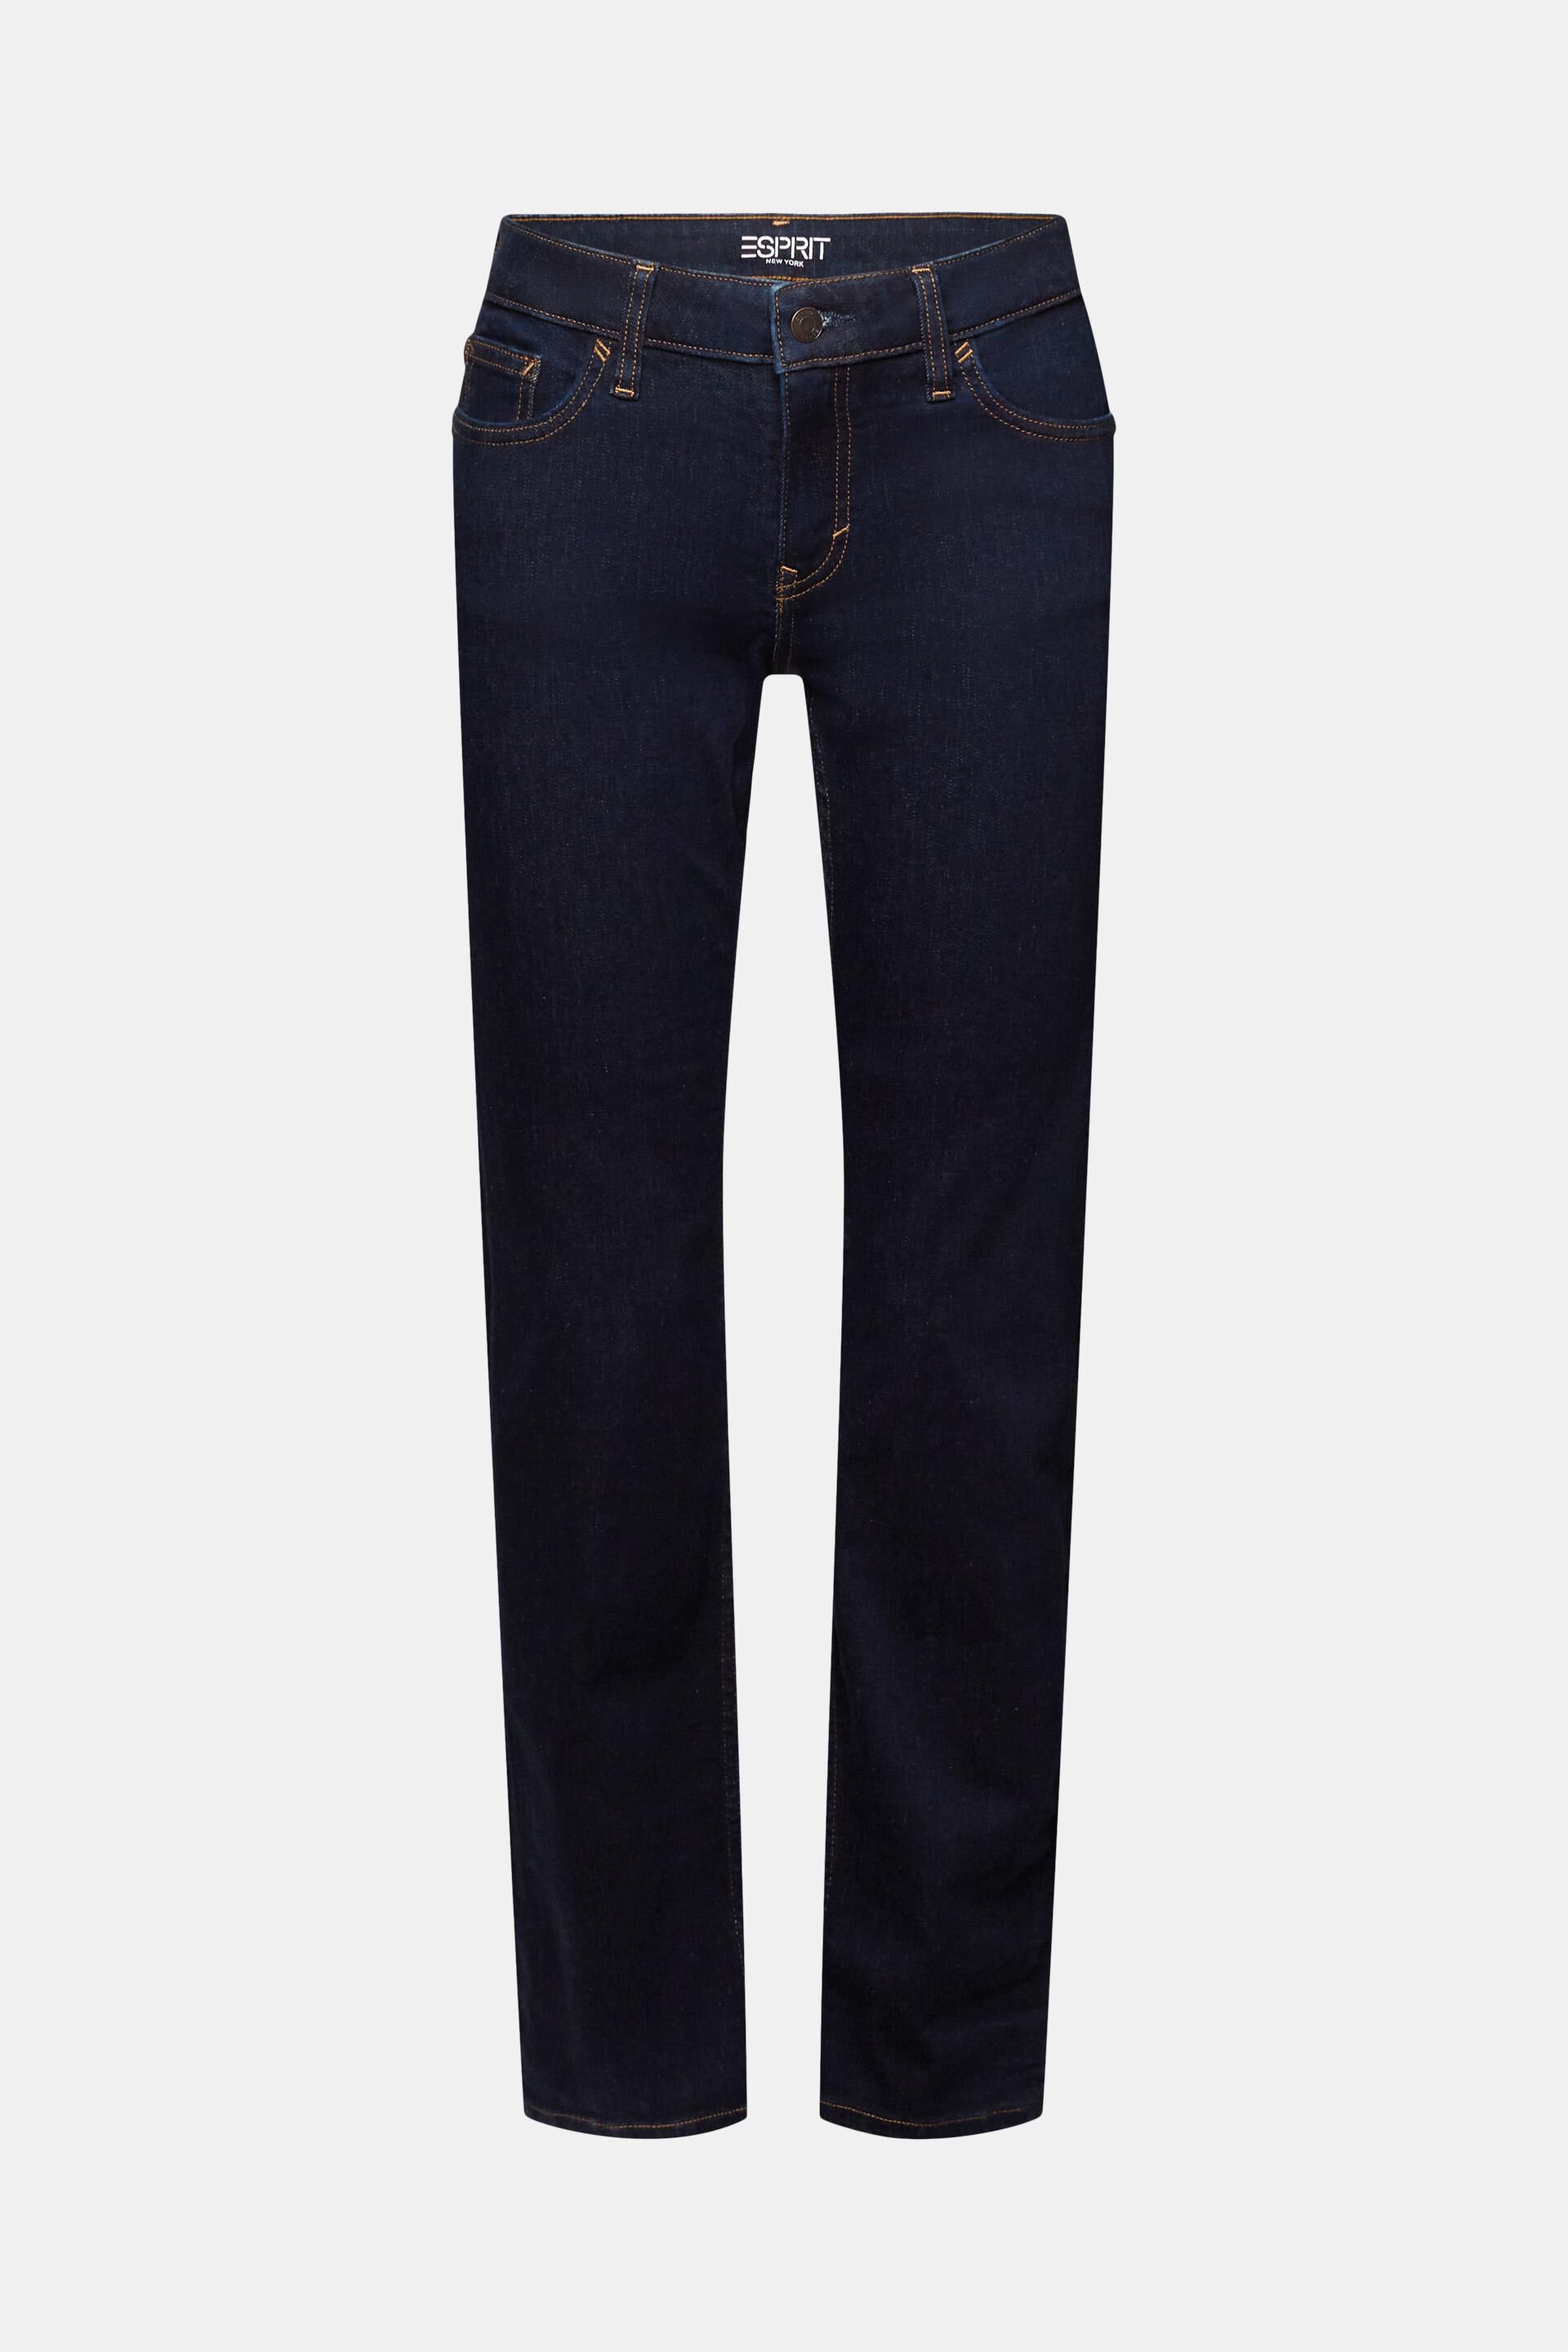 Esprit Bein, Baumwollmischung mit Stretch-Jeans geradem